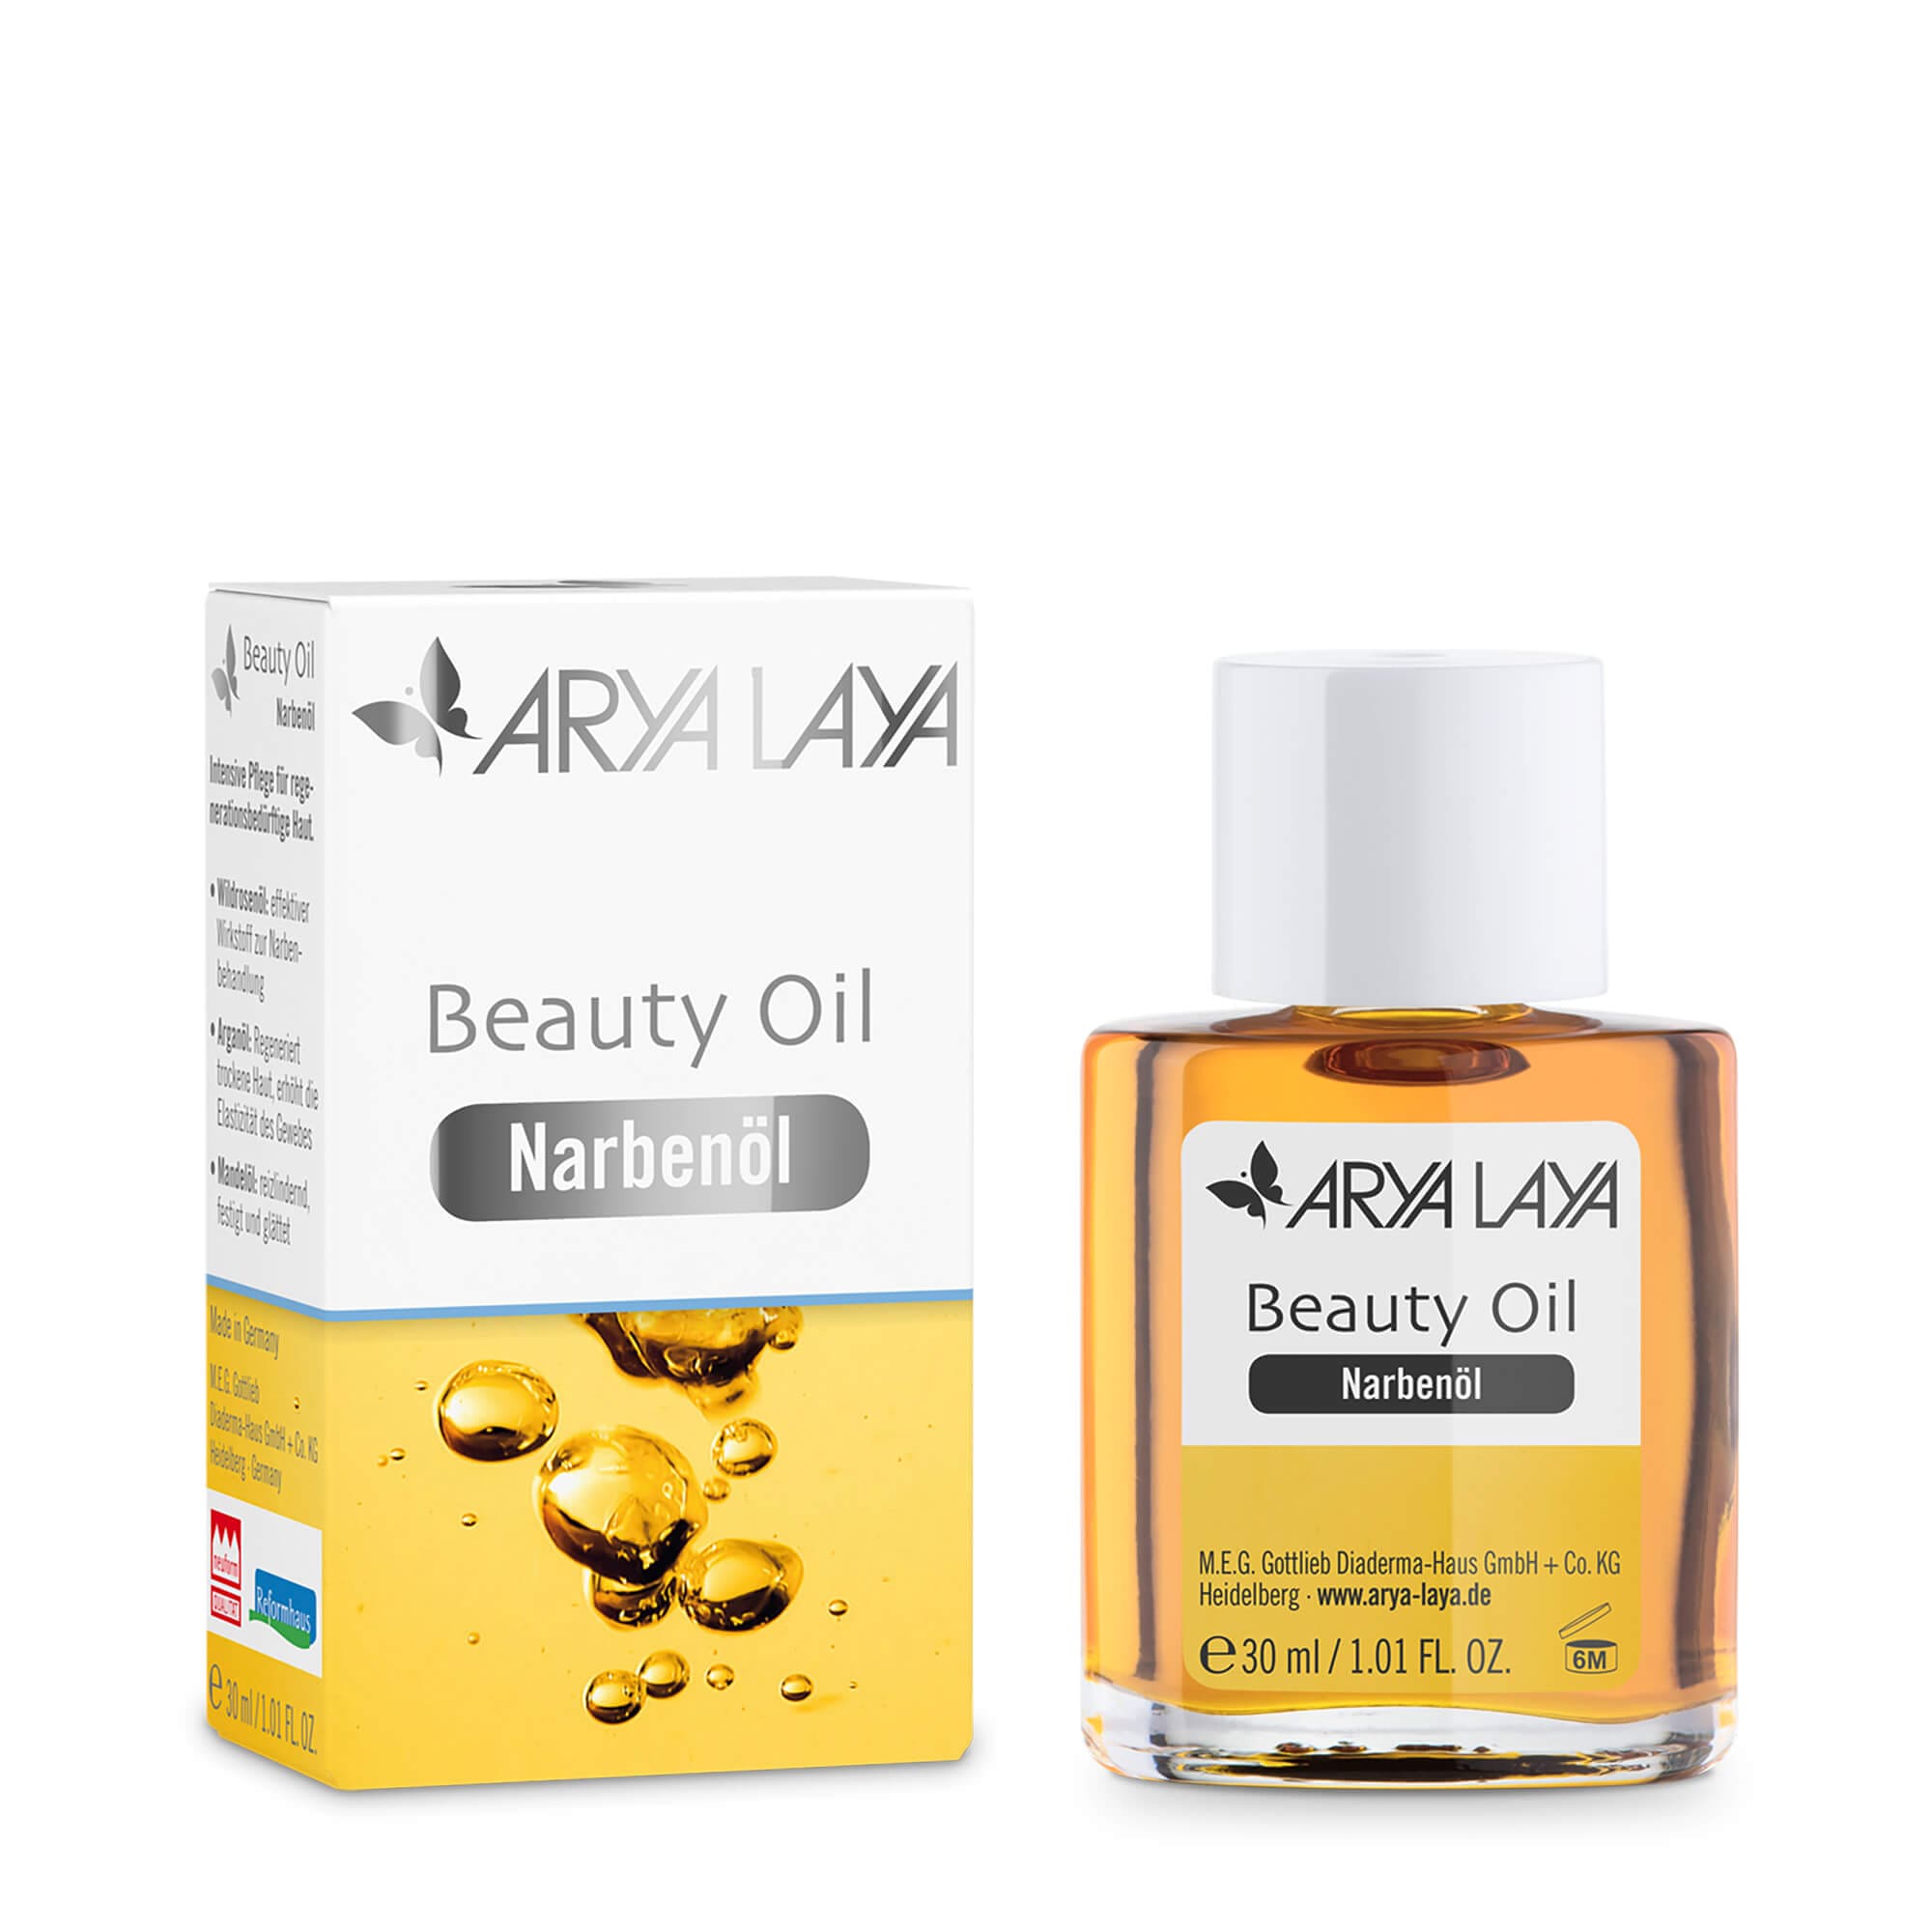 Glasfläschchen und Faltschachtel mit ARYA LAYA Beauty Oil Narbenöl, 30 ml 